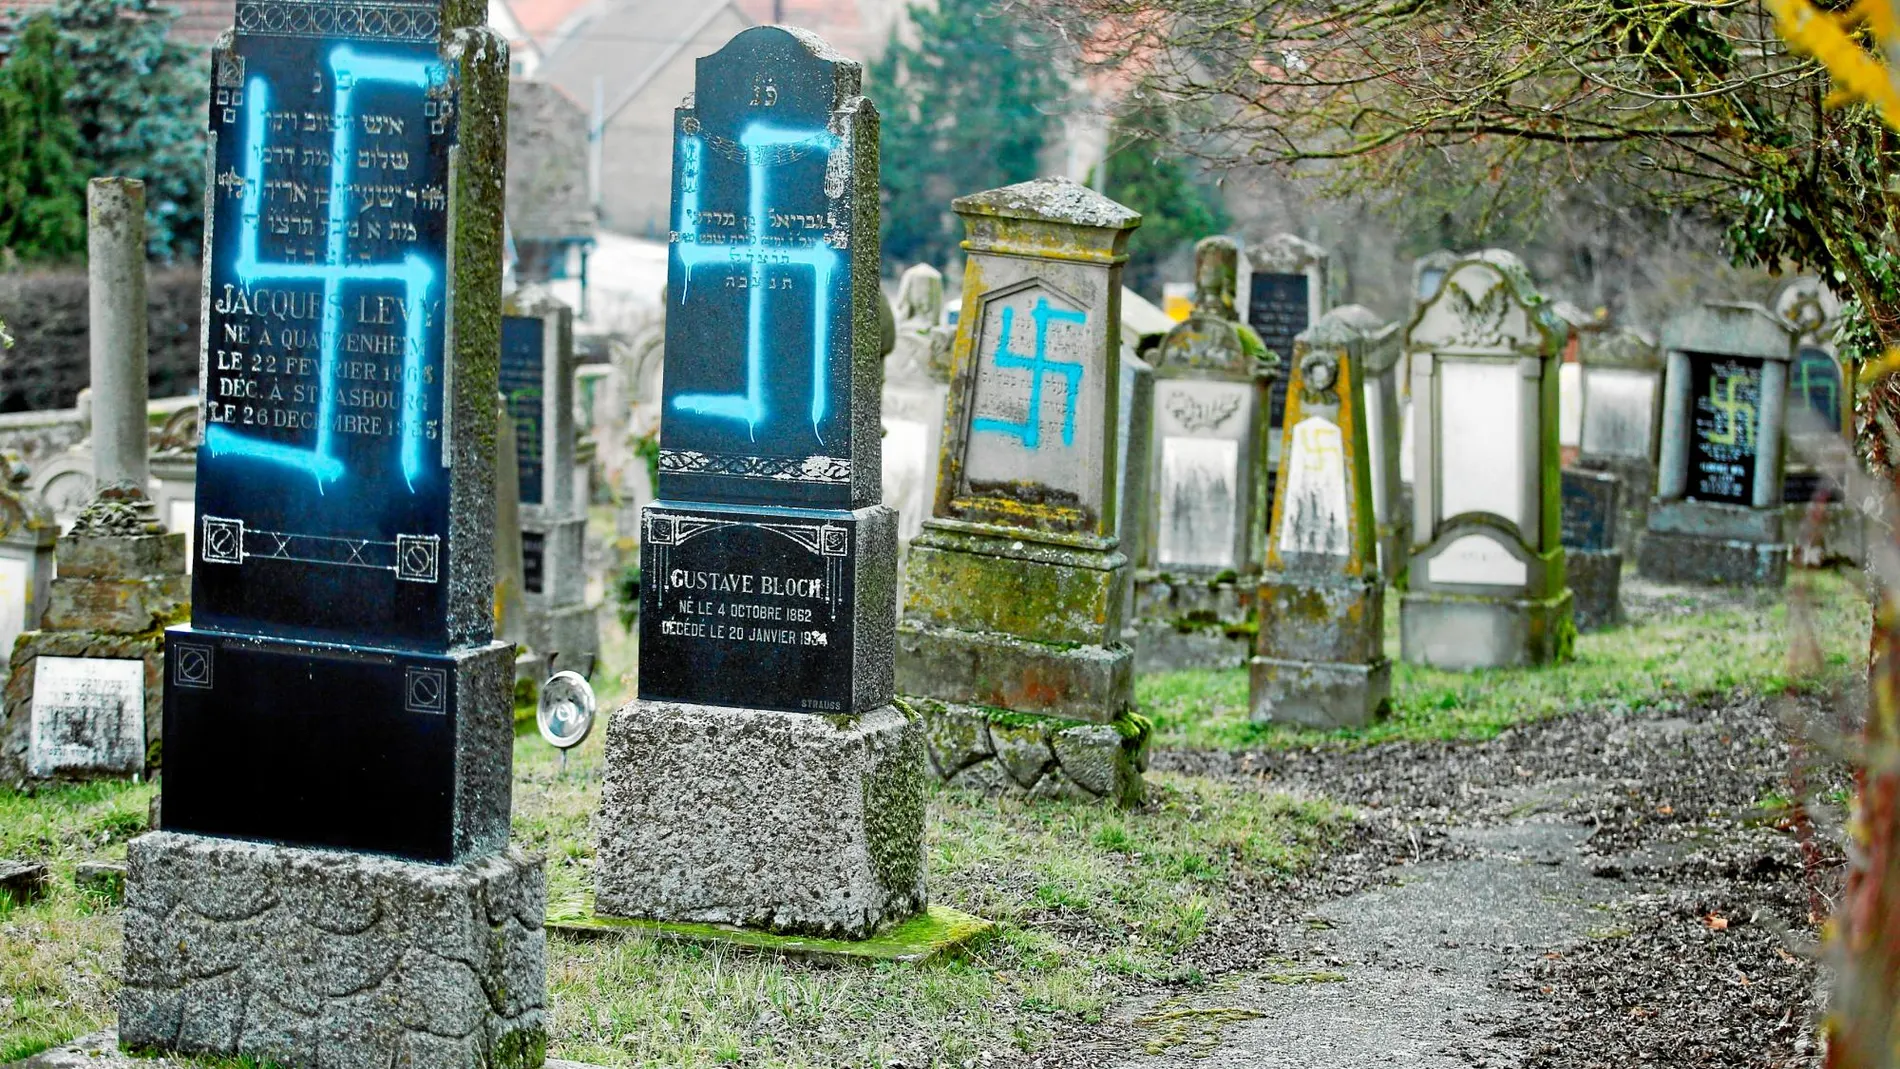 Varias de las tumbas profanadas con pintadas de cruces gamadas en el cementerio en Quatzenheim, localidad próxima a Estrasburgo / Reuters